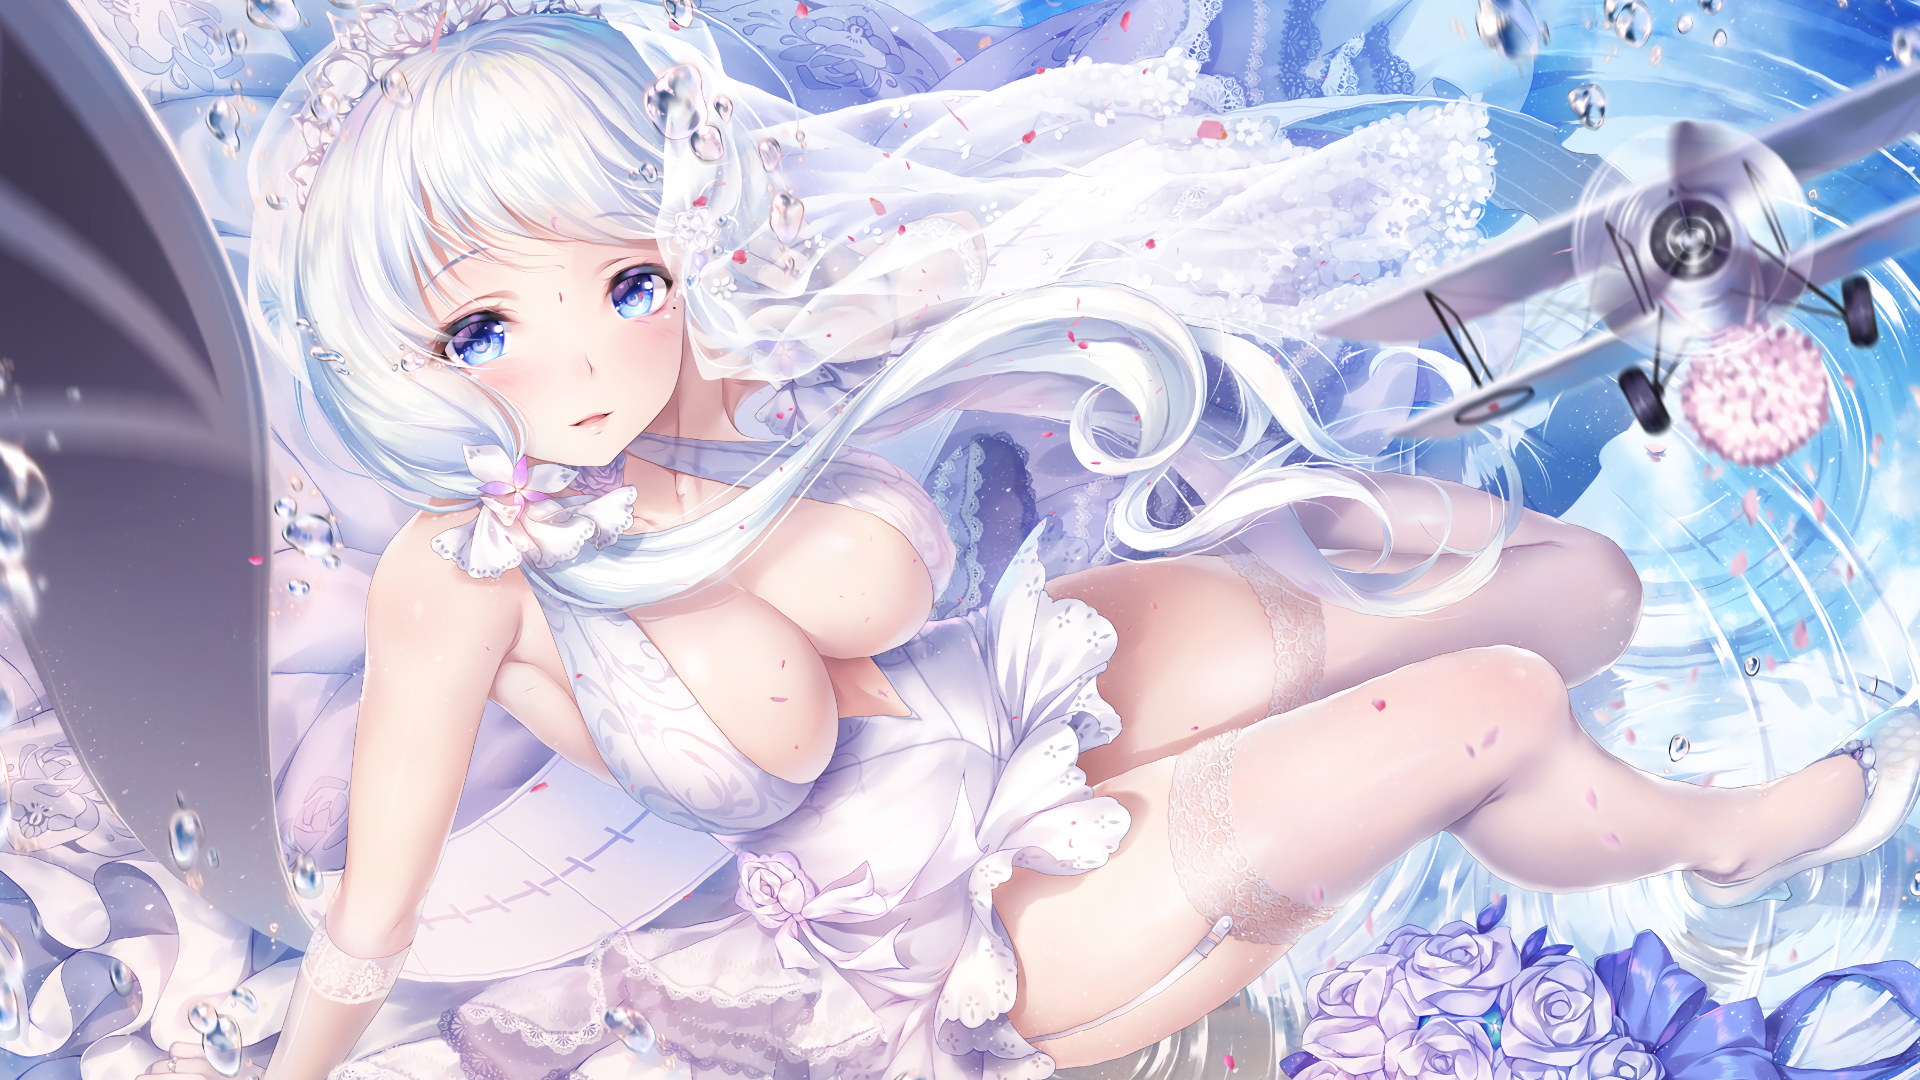 Anime 1920x1080 white hair Azur Lane blue eyes wedding dress thigh-highs cleavage anime girls artwork Illustrious (Azur Lane) Paint Musume